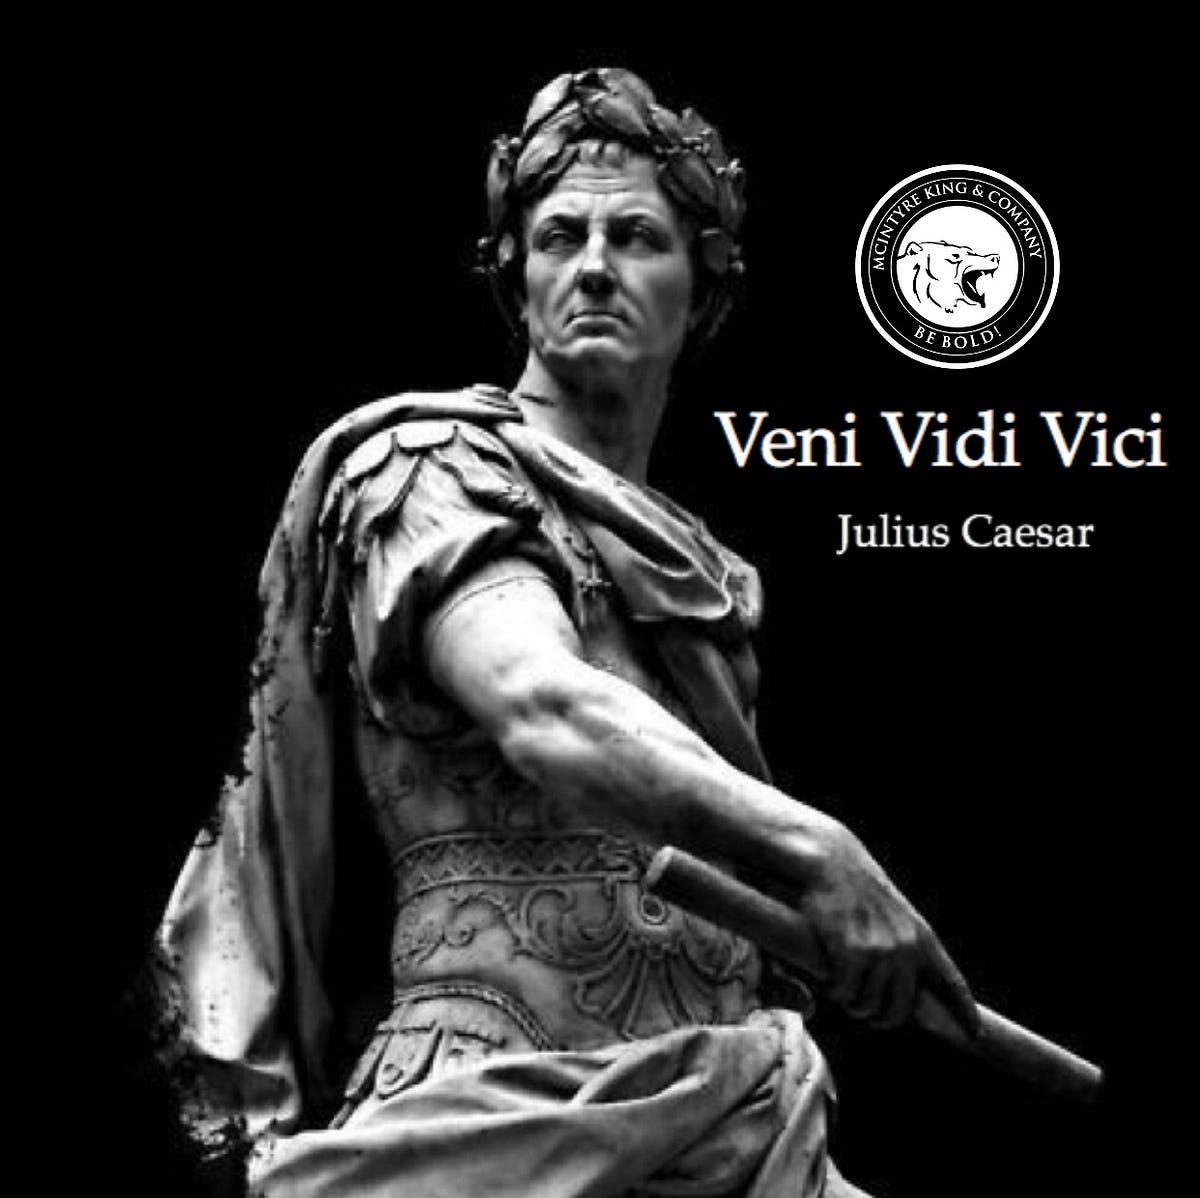  Veni Vidi Vici (I Came, I Saw, I Conquered) Necklace